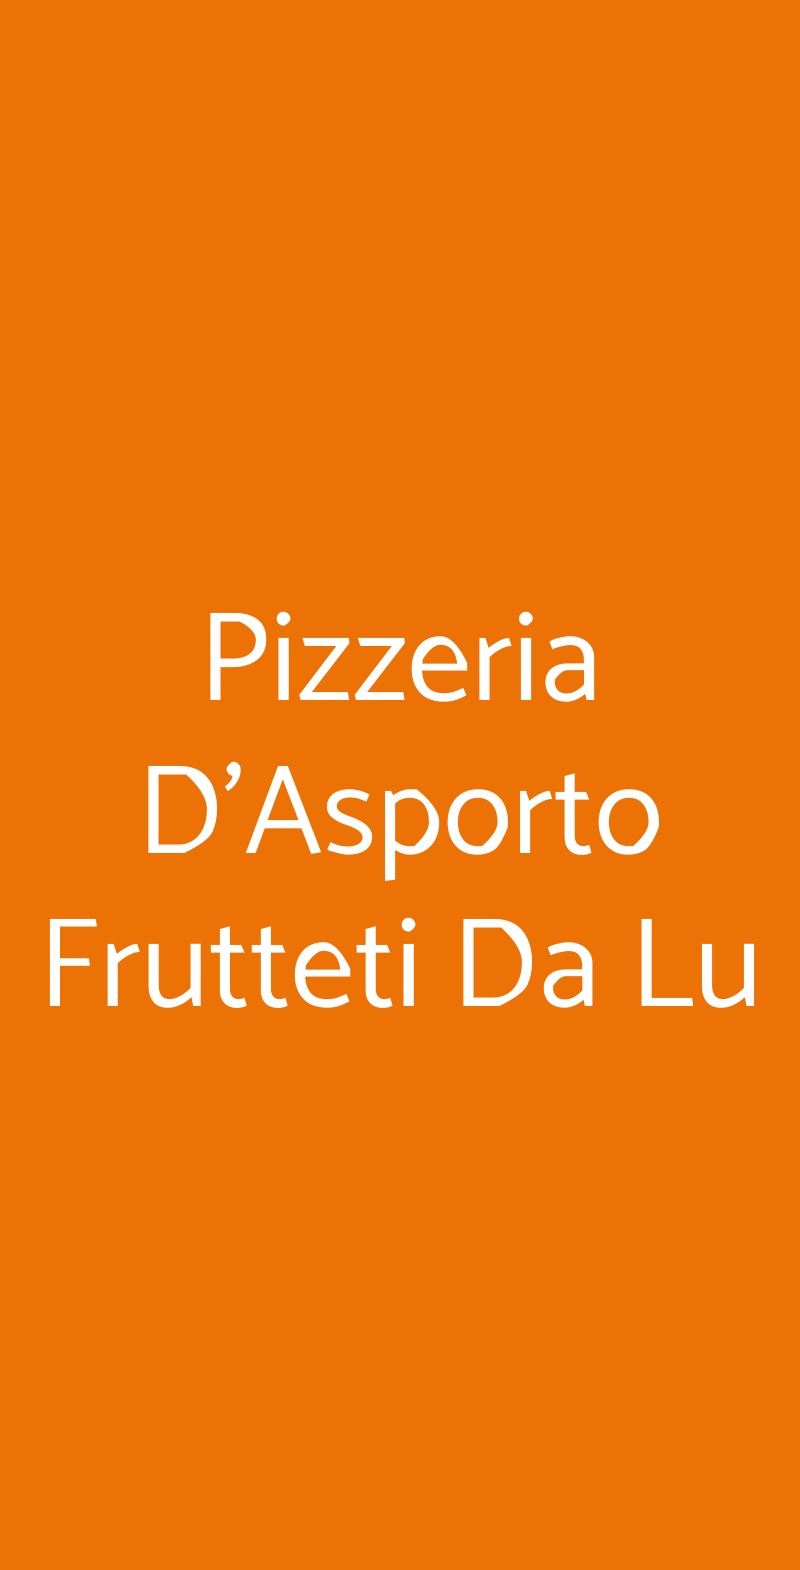 Pizzeria D'Asporto Frutteti Da Lu Ferrara menù 1 pagina